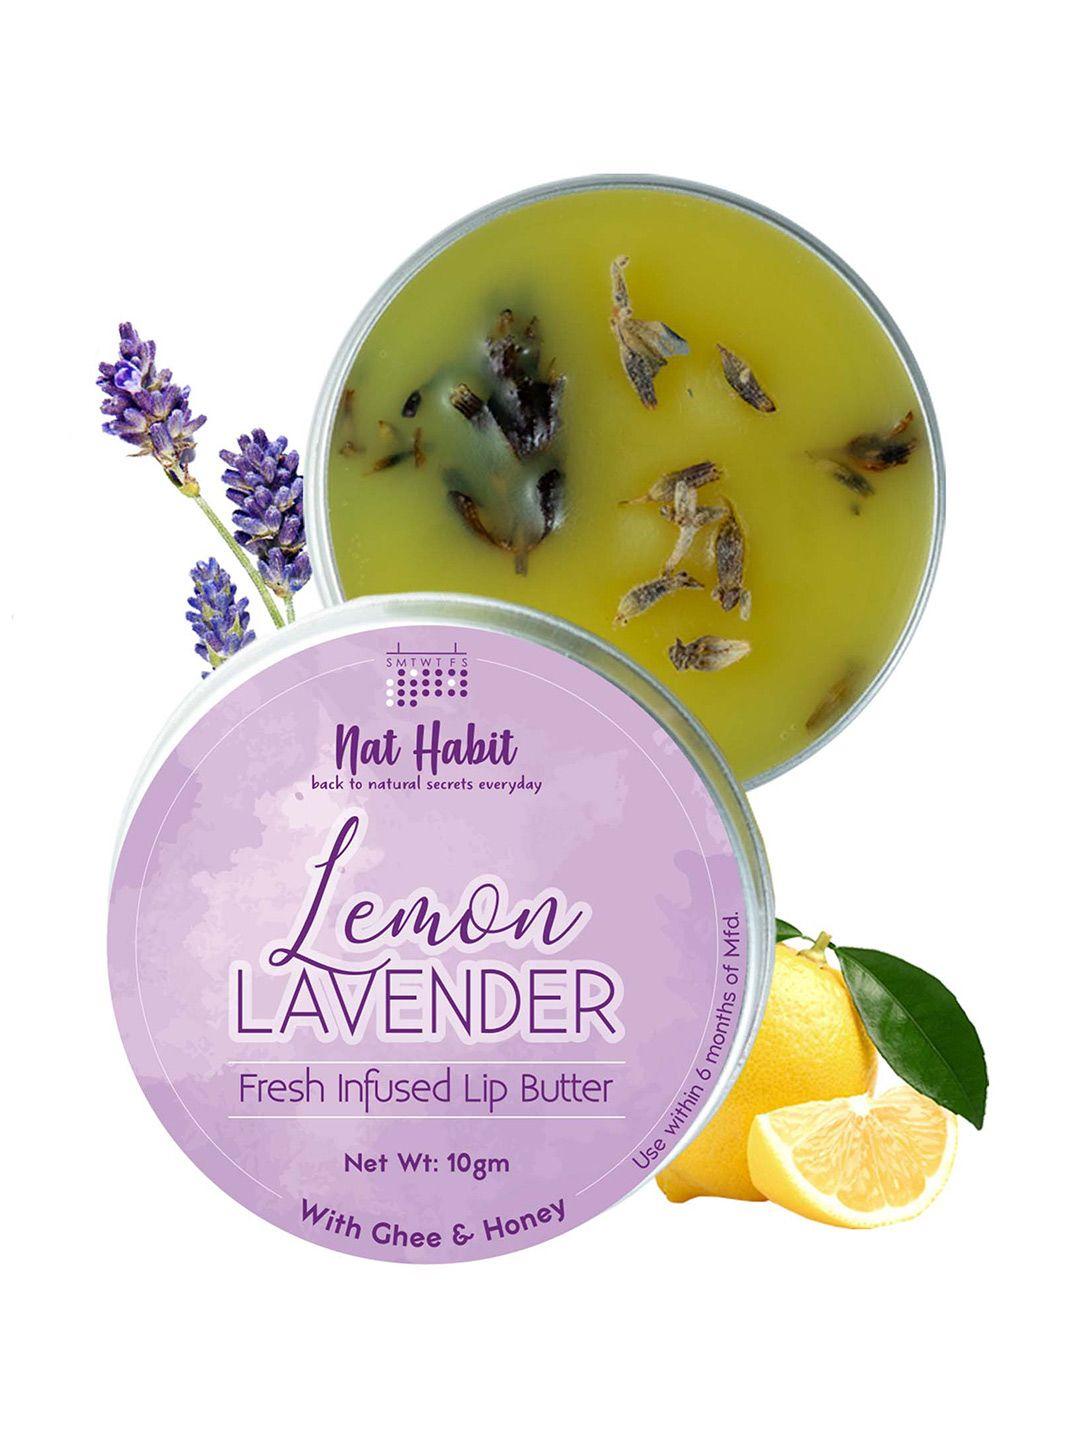 nat habit lemon lavender fresh infused lip butter with ghee & honey - 10g